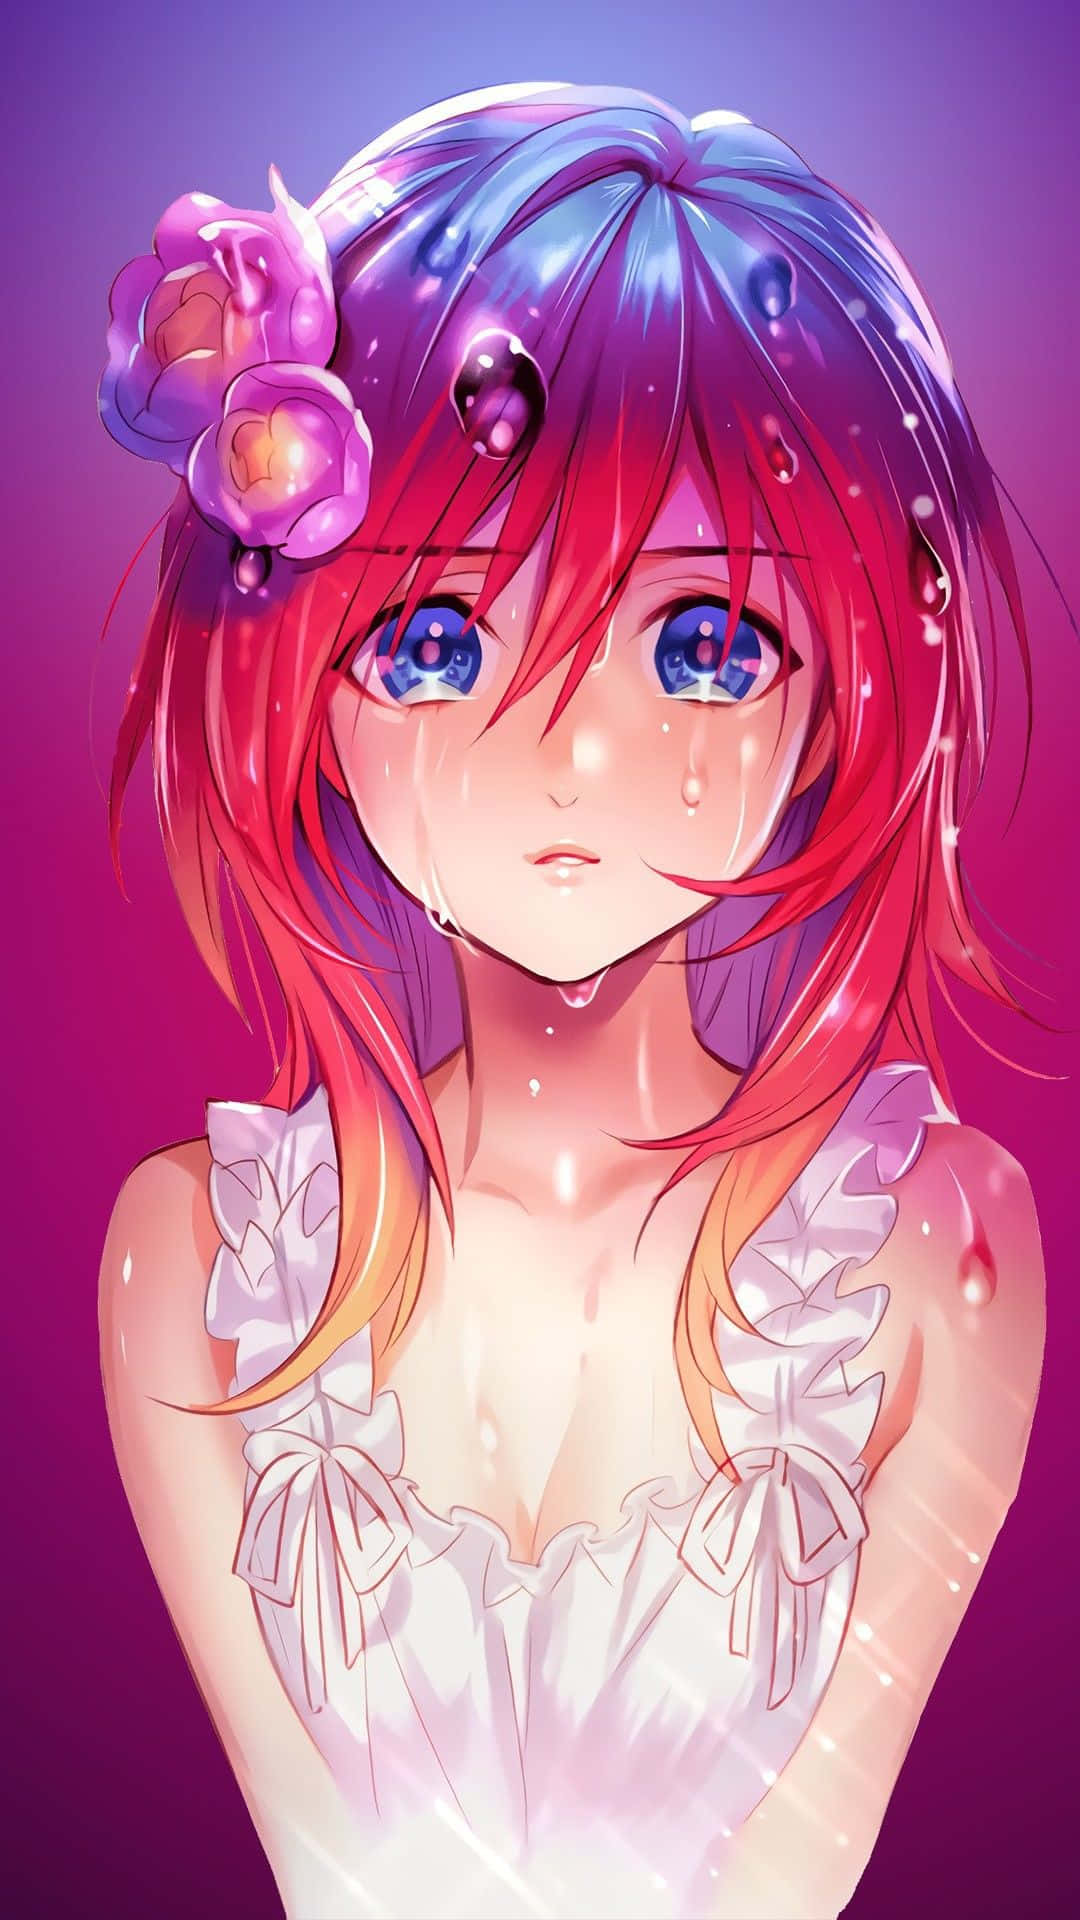 Tårer af sorg rulle ned på ansigtet af en anime Wallpaper